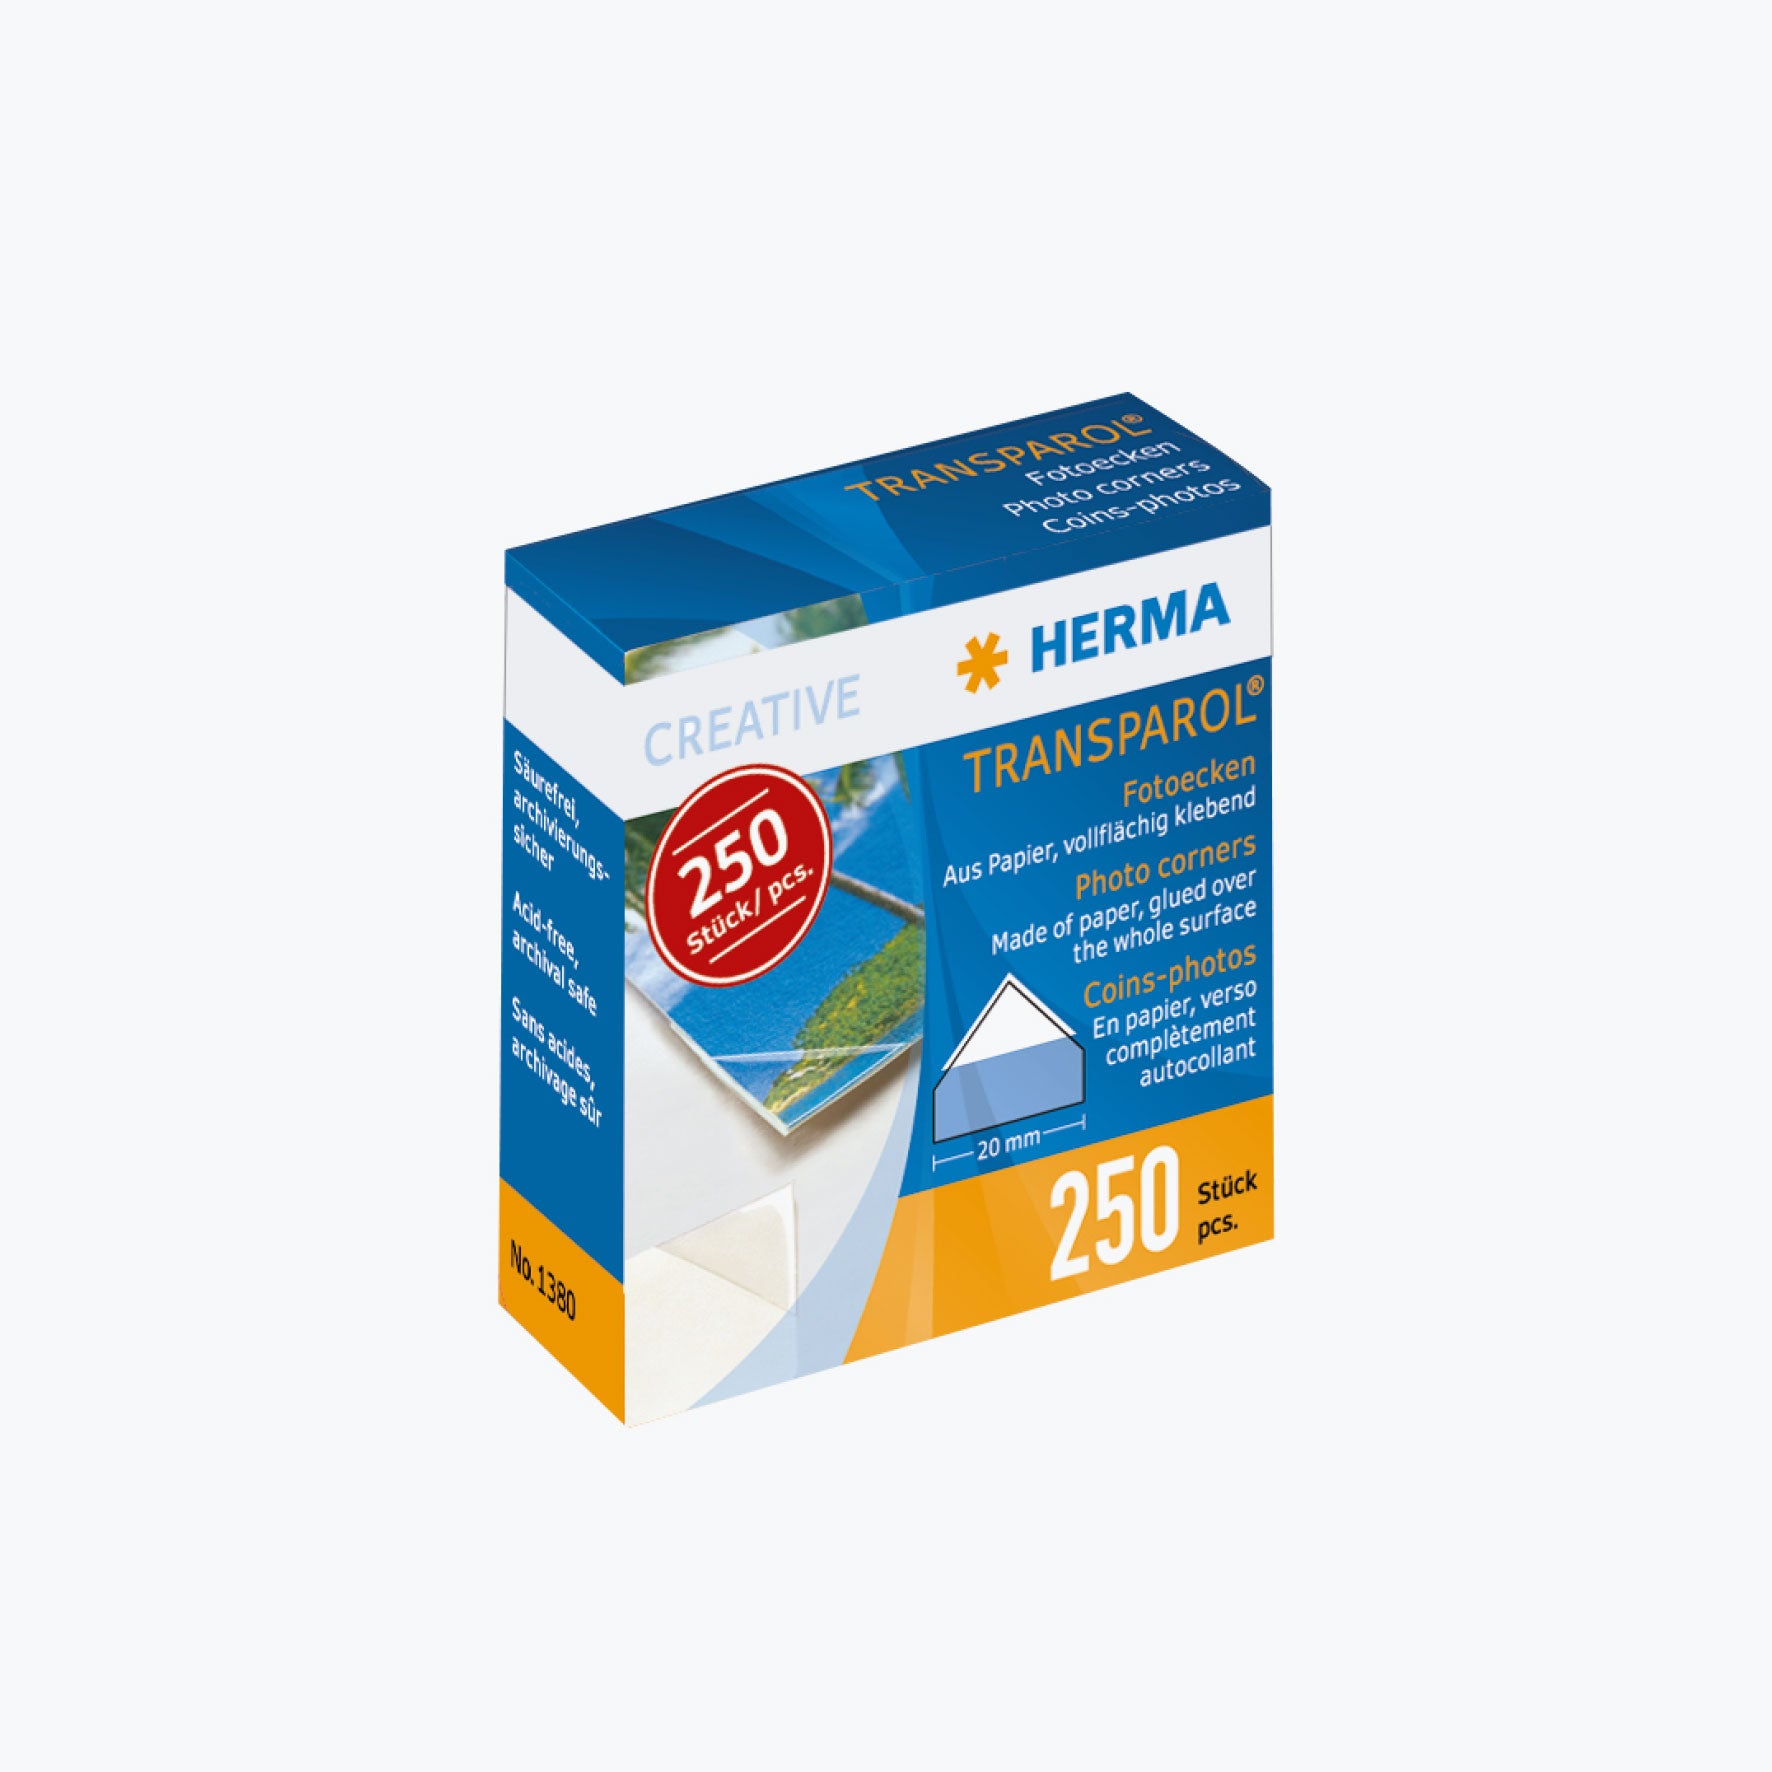 Herma - Photo Corners - Pack of 250